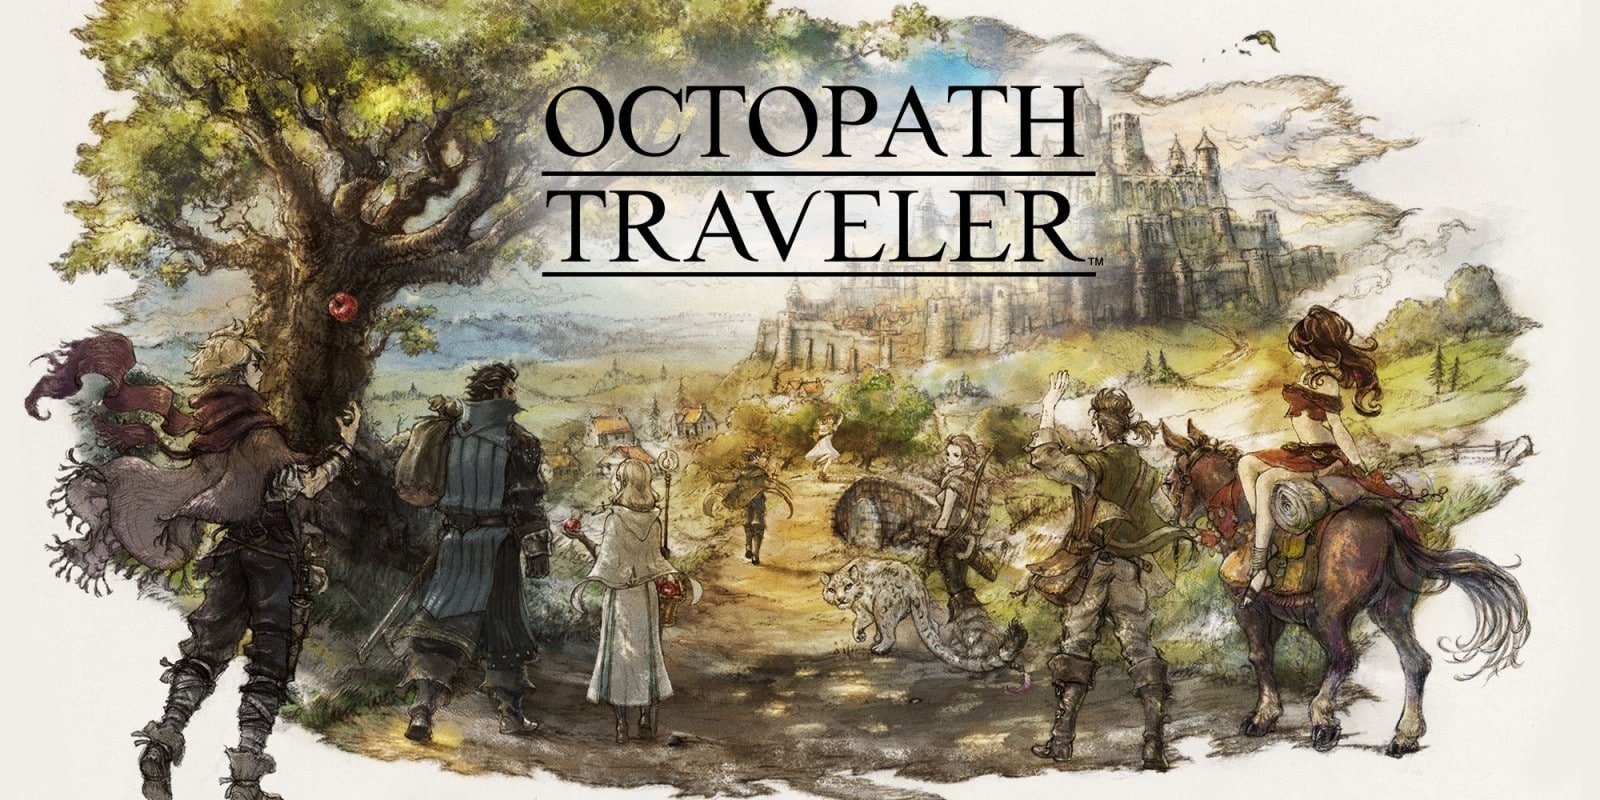 Octopath Traveler retiré (temporairement ?) de l’eShop Nintendo